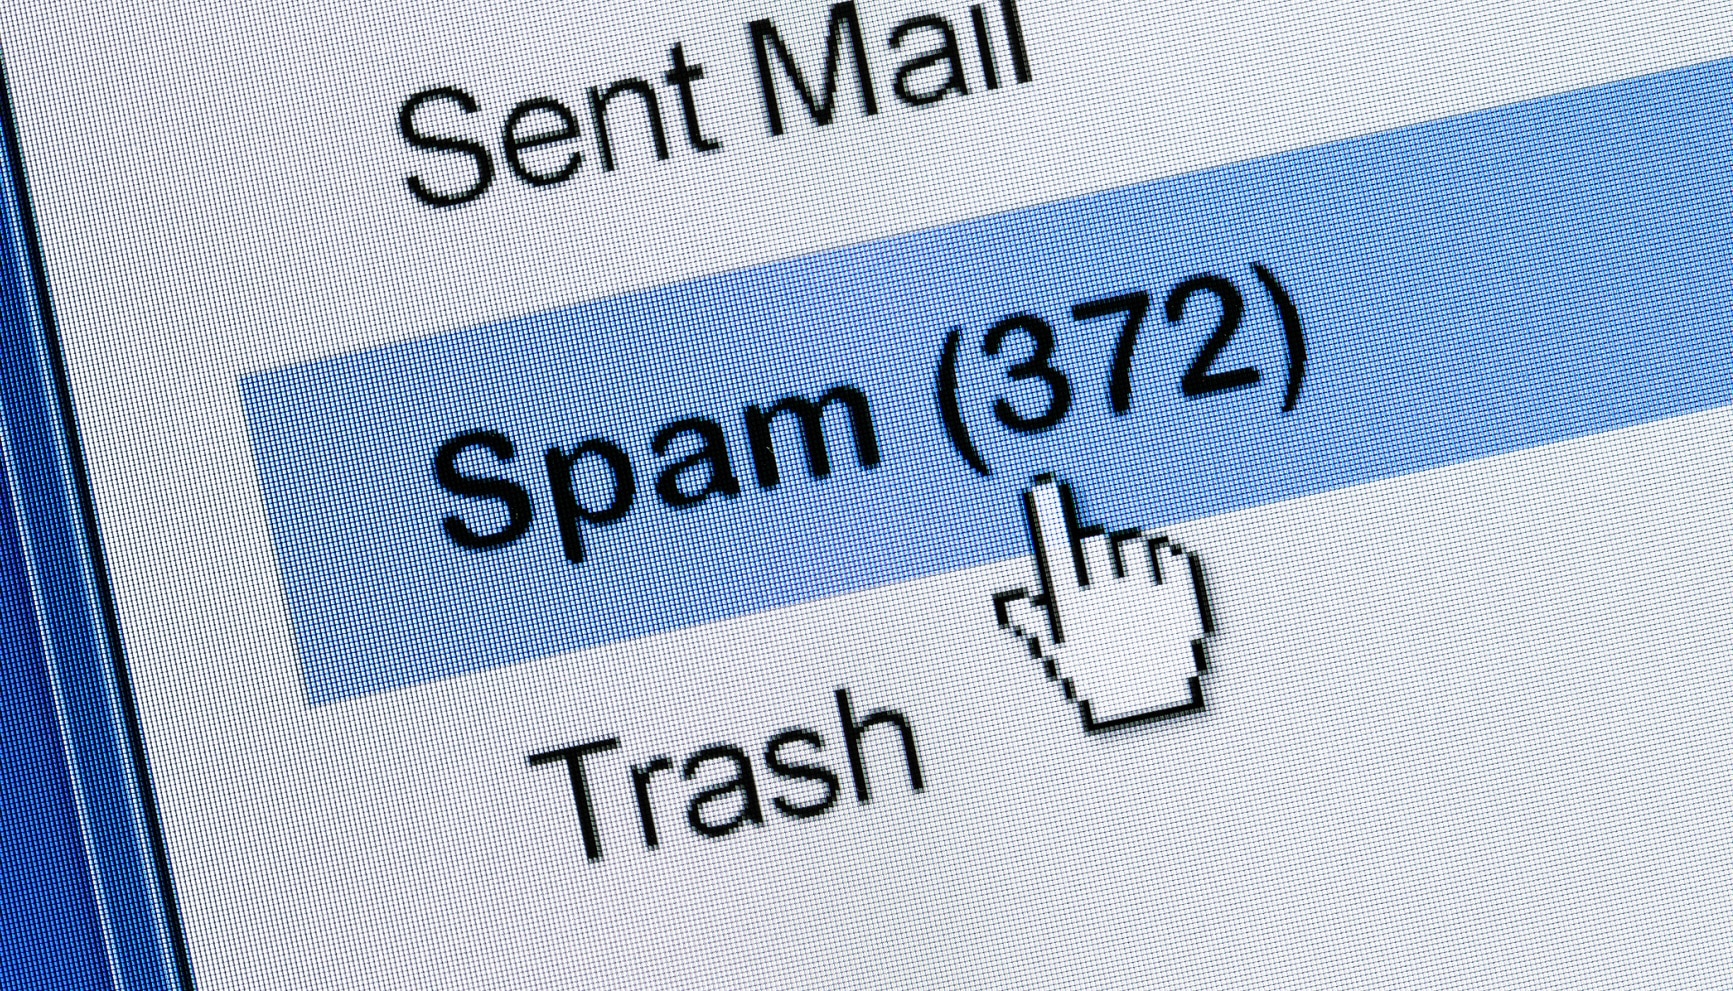 spam-correo-electronico-bbva